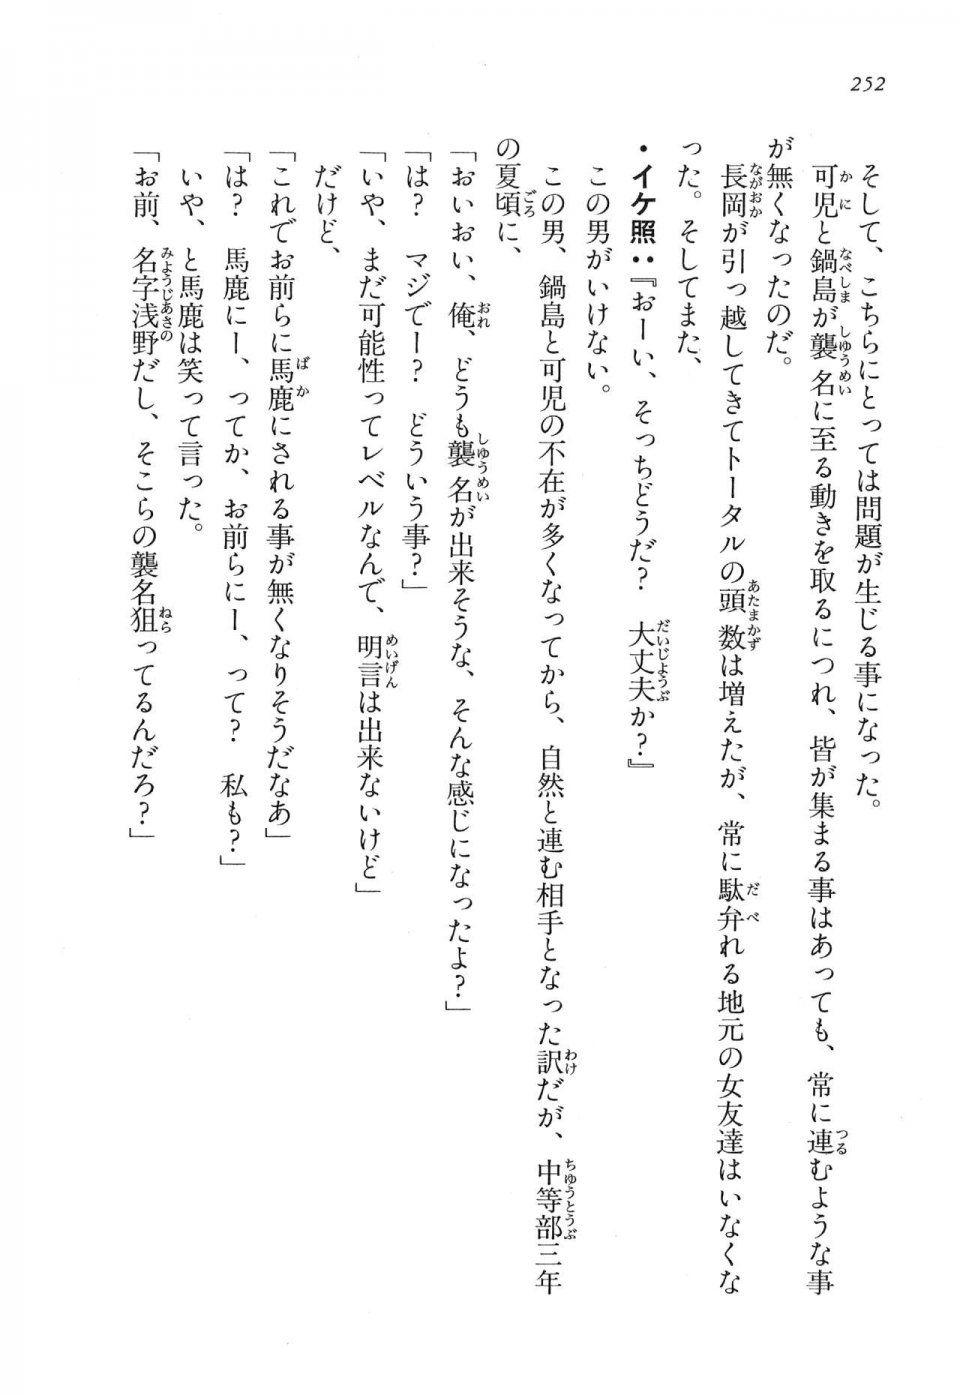 Kyoukai Senjou no Horizon LN Vol 17(7B) - Photo #252